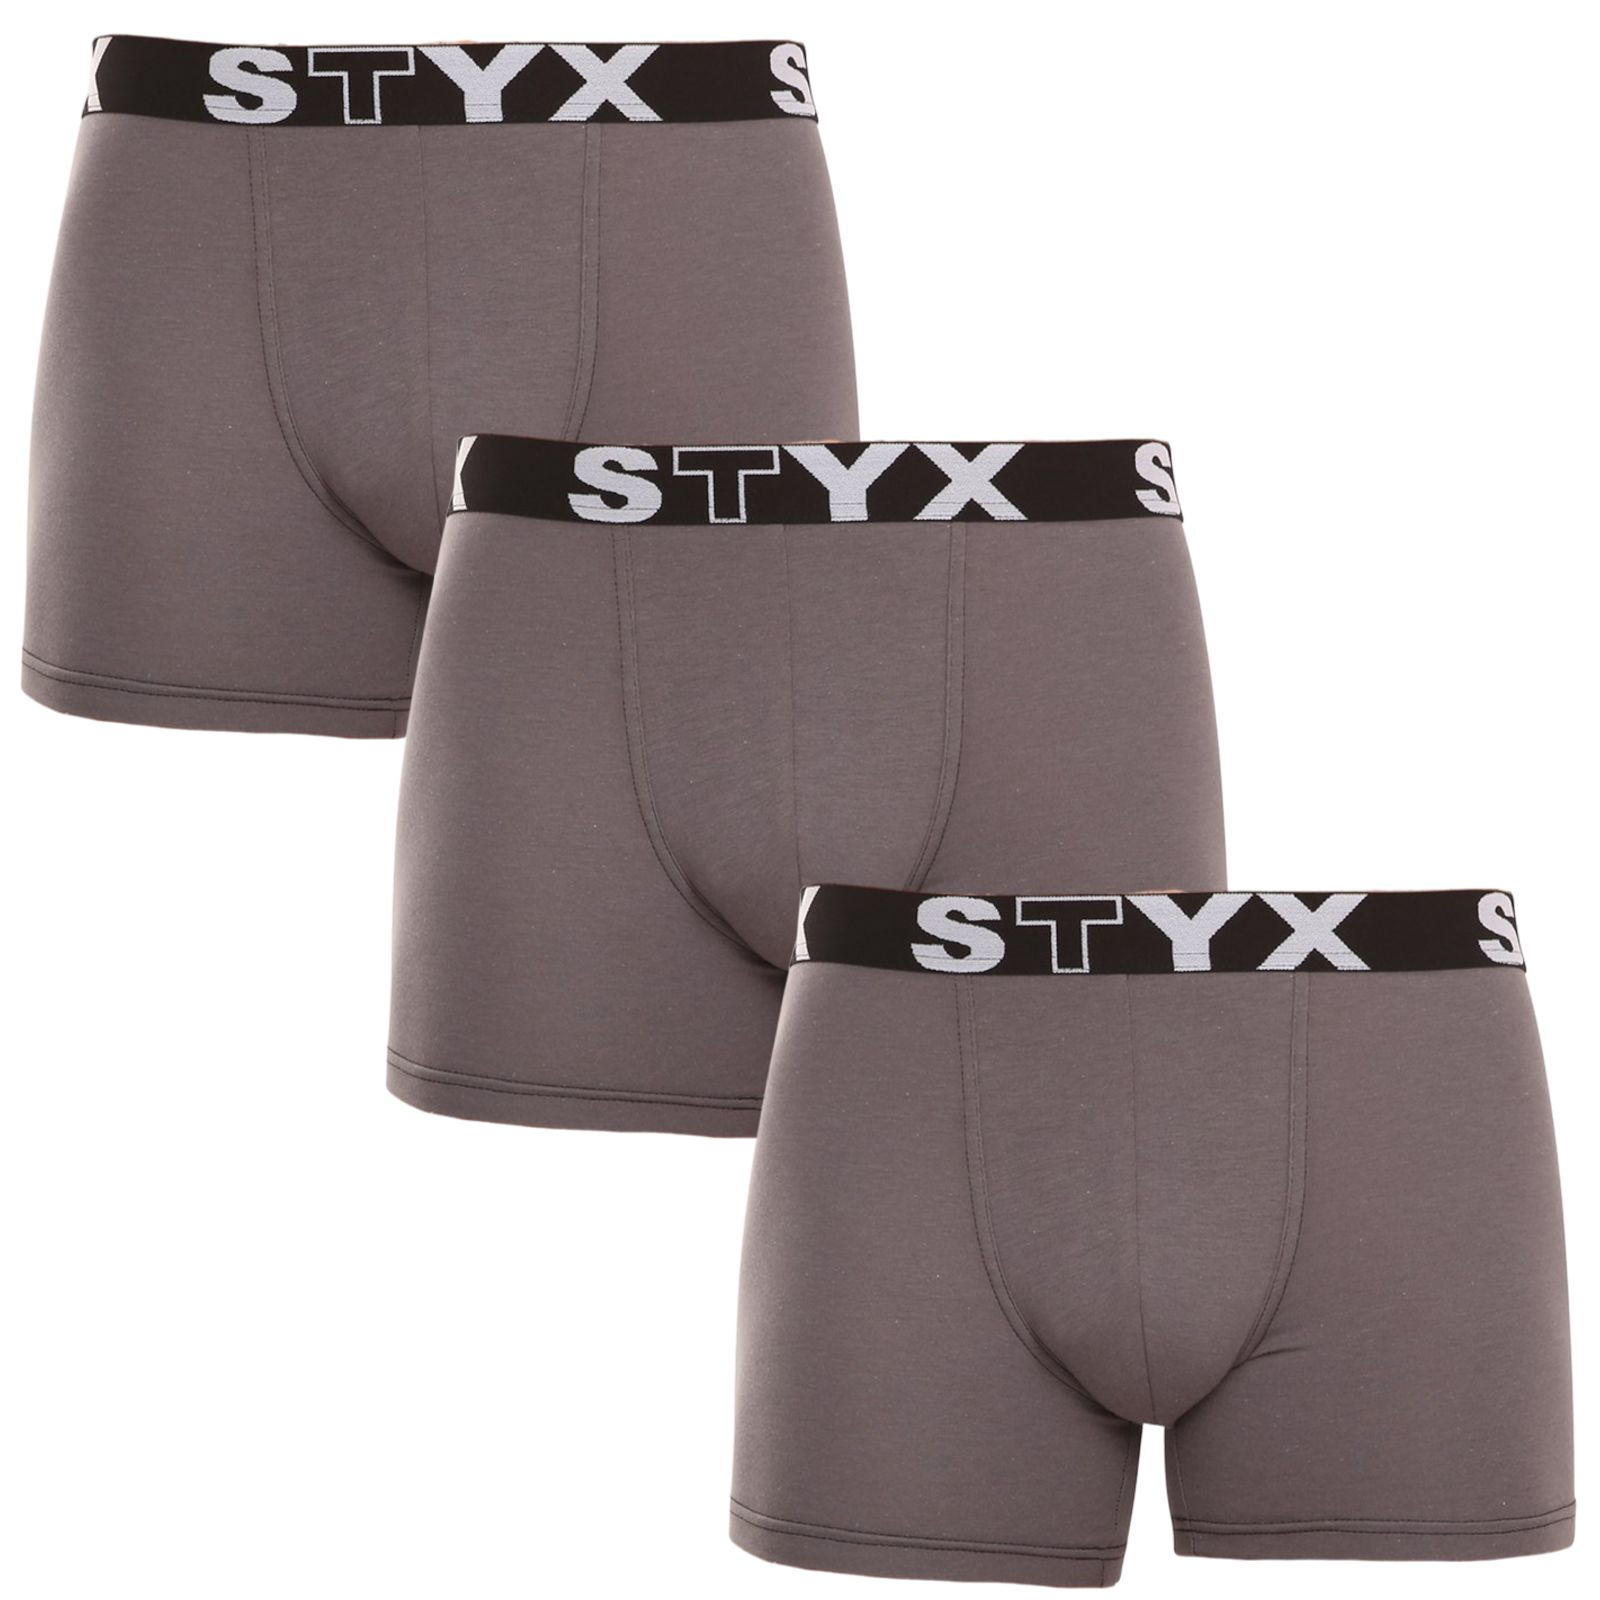 E-shop 3PACK pánské boxerky Styx long sportovní guma tmavě šedé